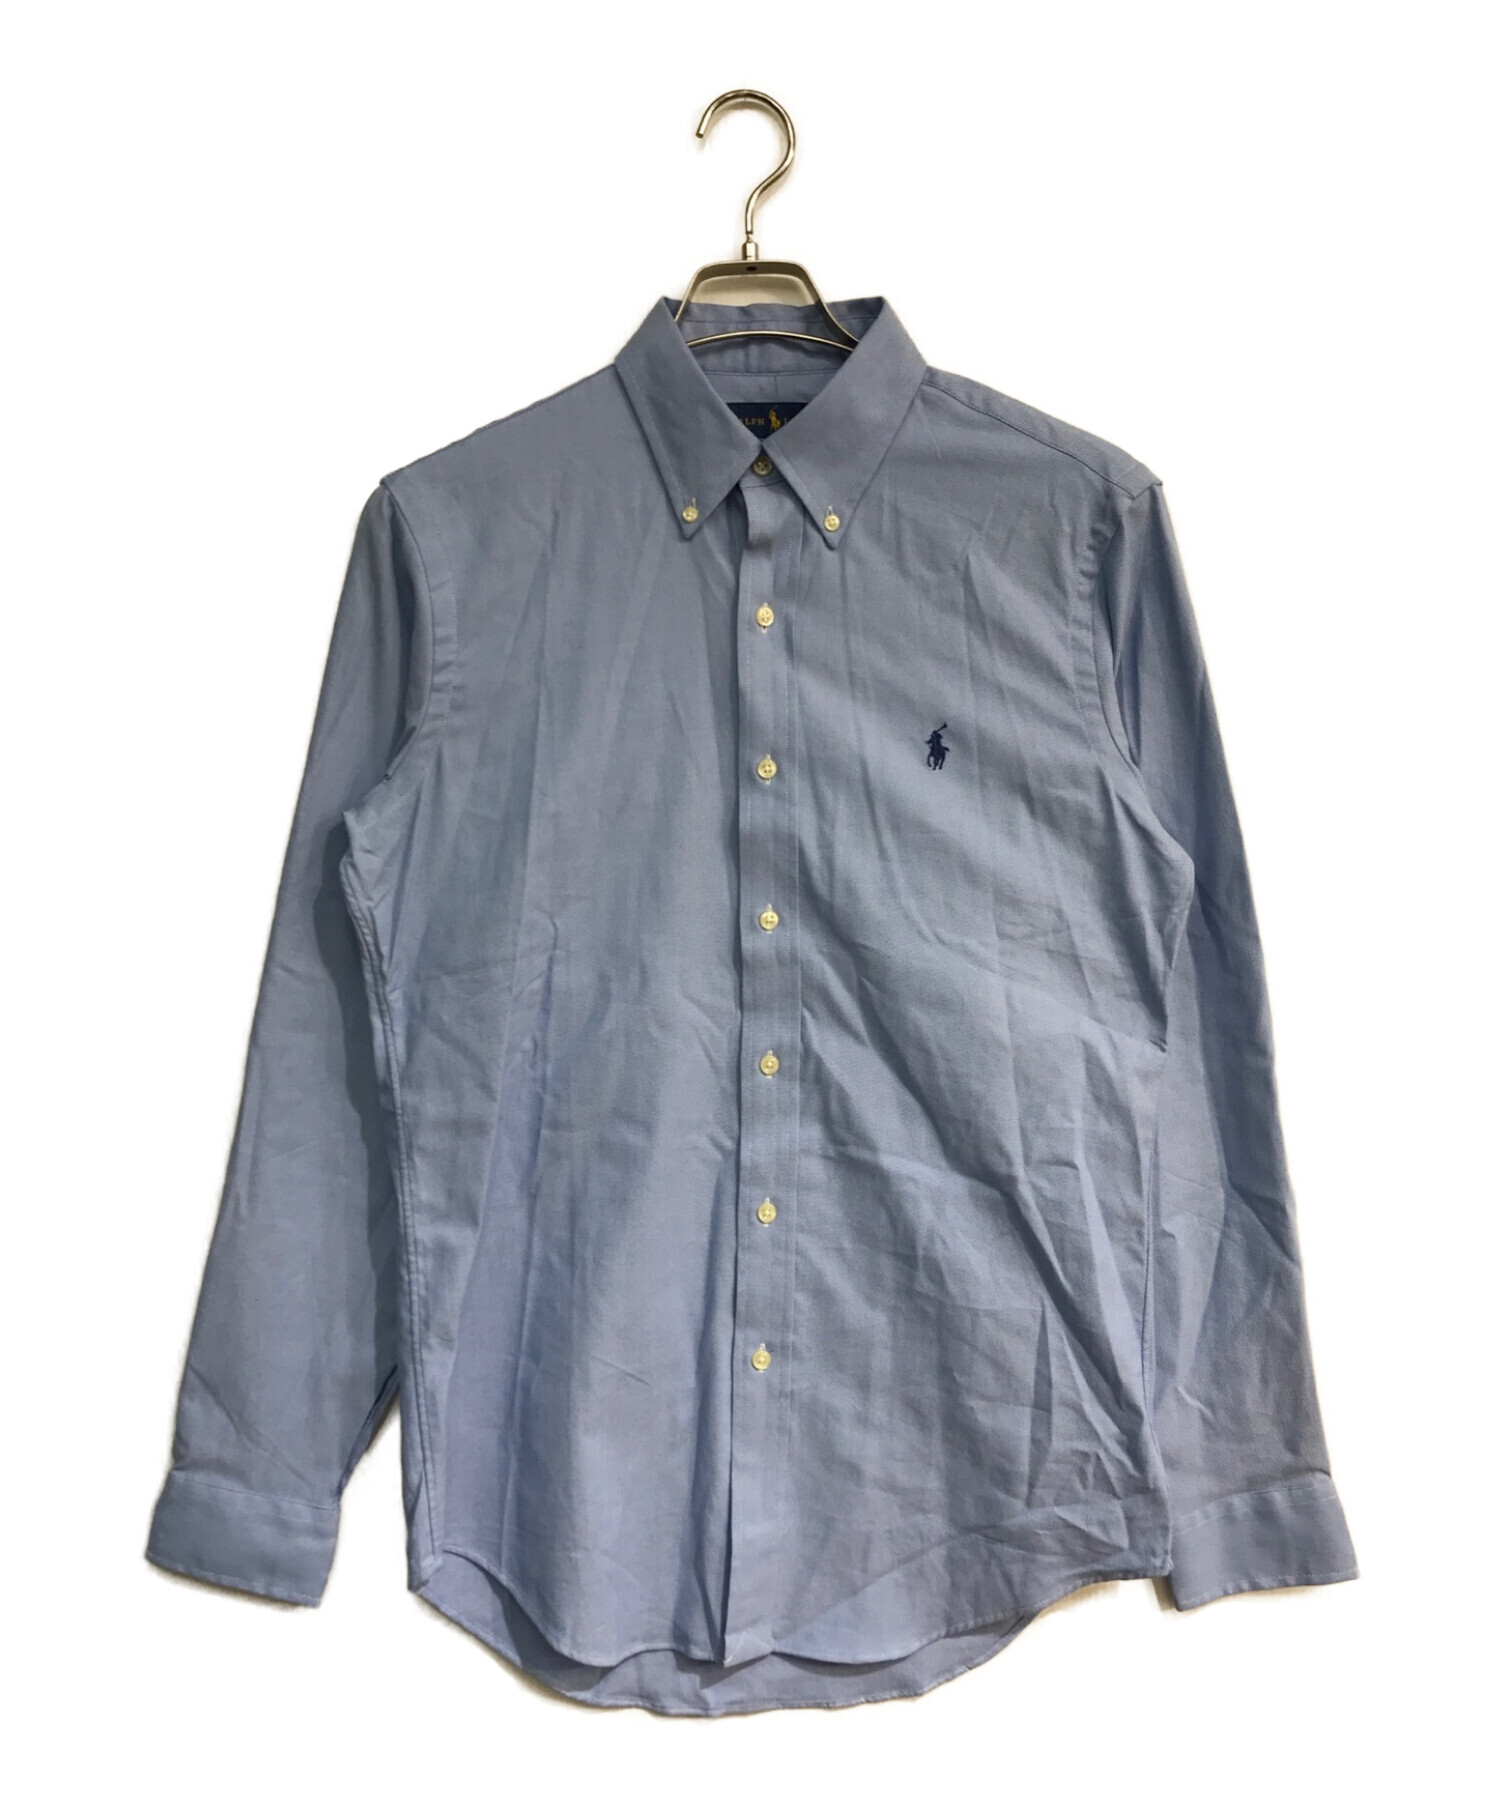 POLO RALPH LAUREN (ポロ・ラルフローレン) ボタンダウンシャツ ブルー サイズ:S 未使用品